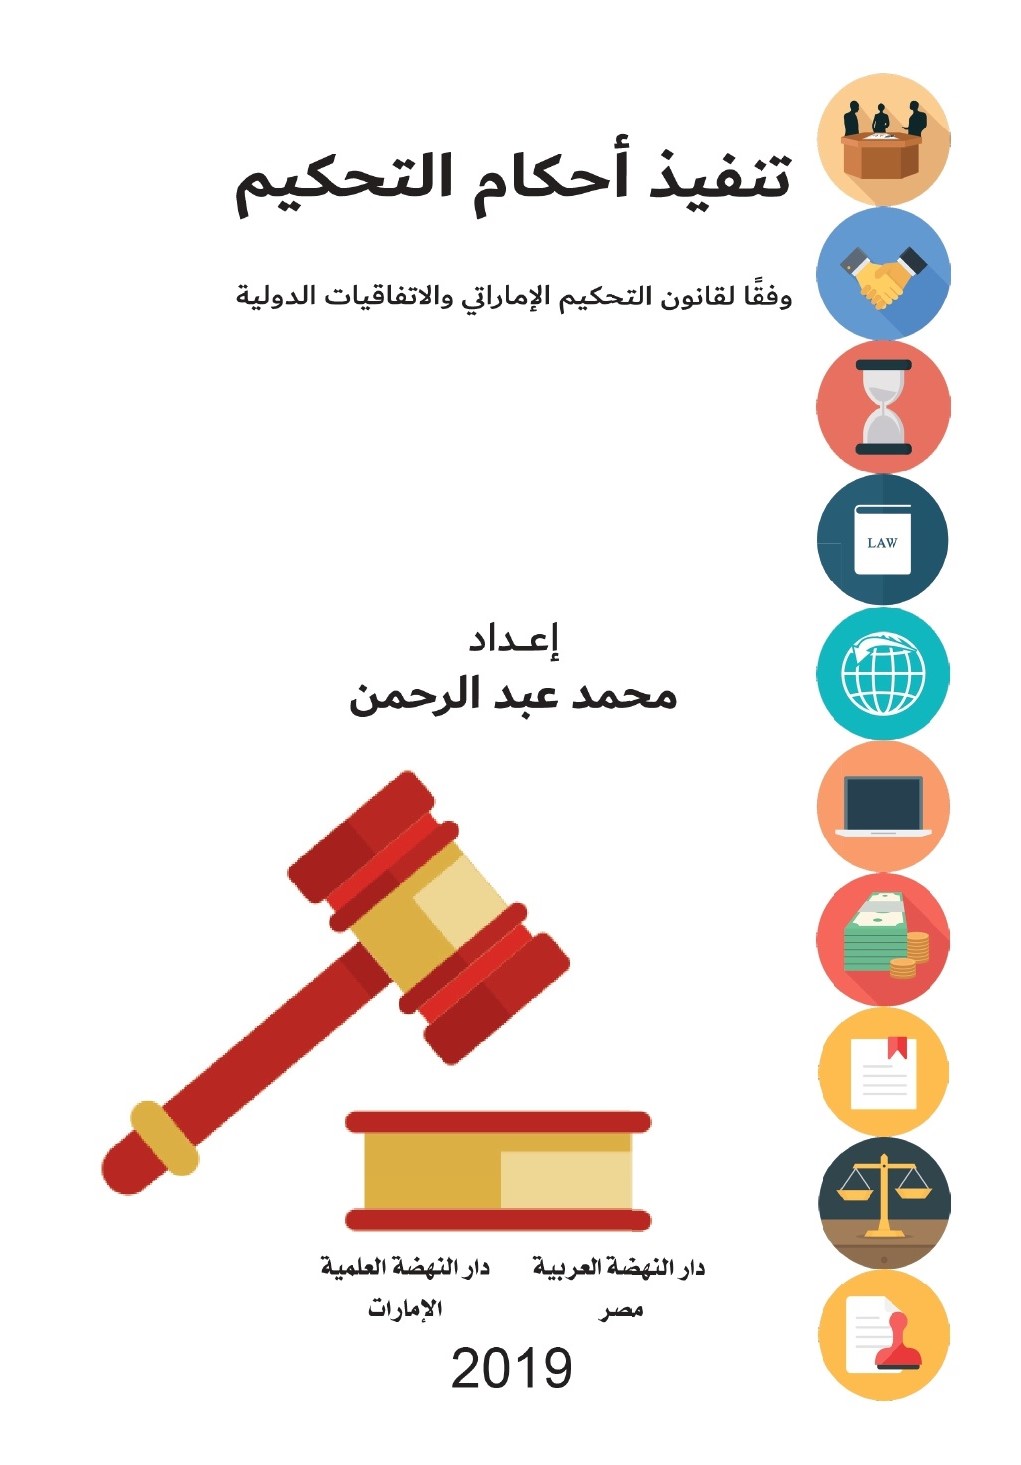 تنفيذ أحكام التحكيم وفقاً لقانون التحكيم الإماراتي والإتفاقيات الدولية